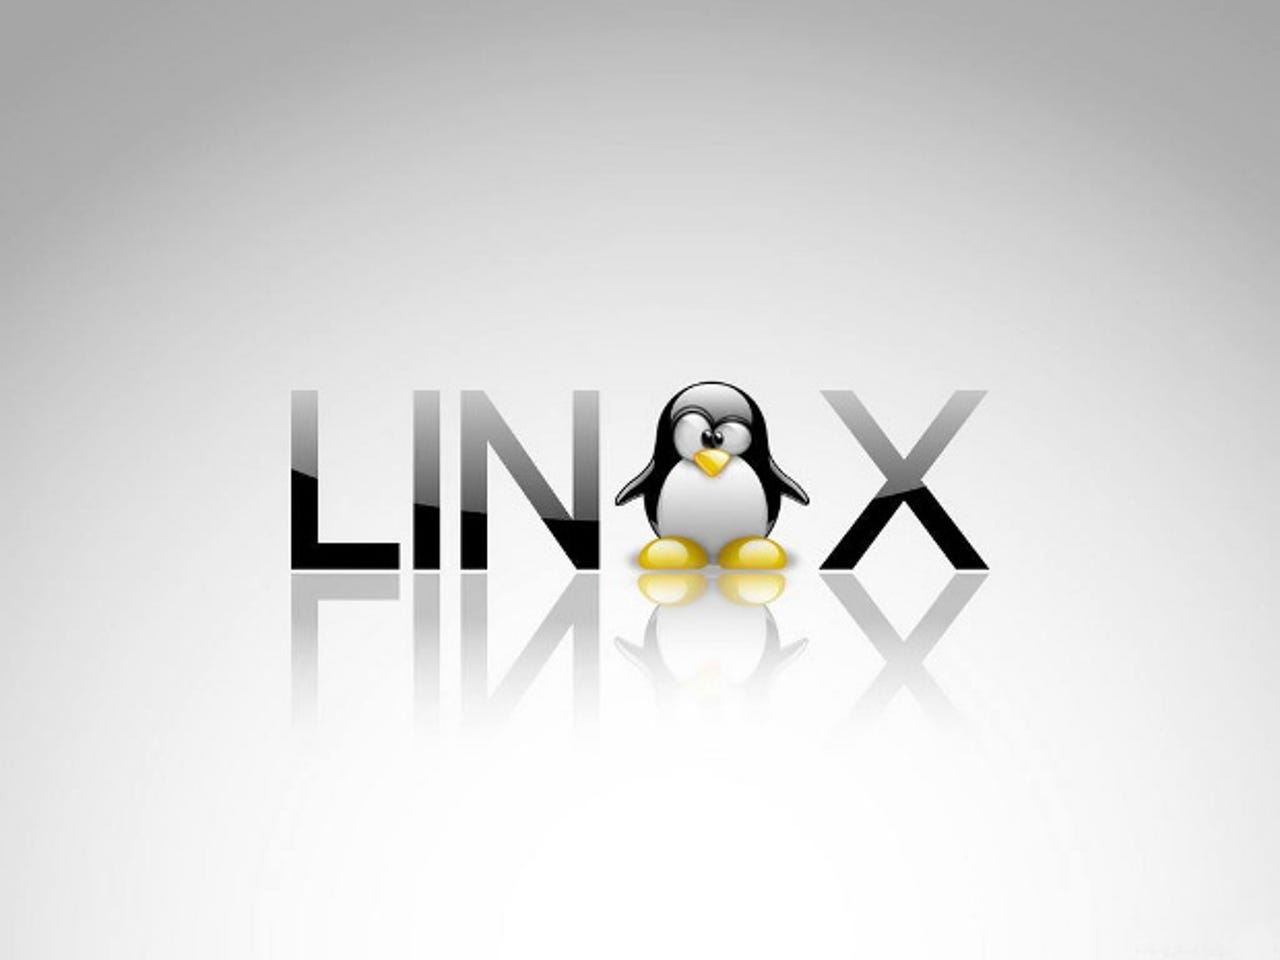 Fantastic Tux Linux